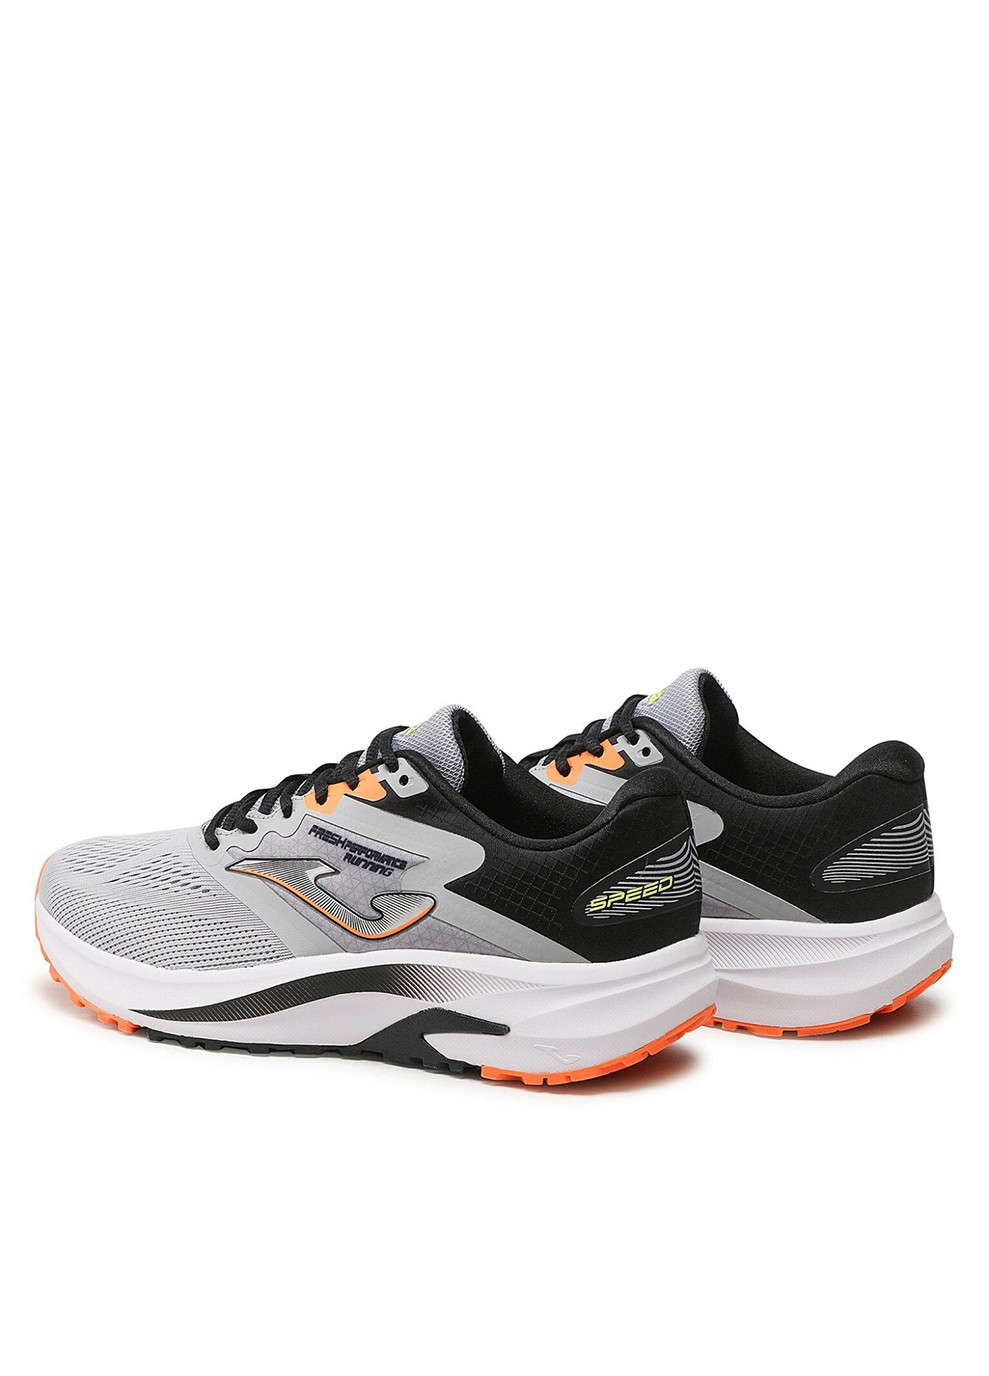 Цветные демисезонные мужские кроссовки для бега r.speed серый оранжевый Joma